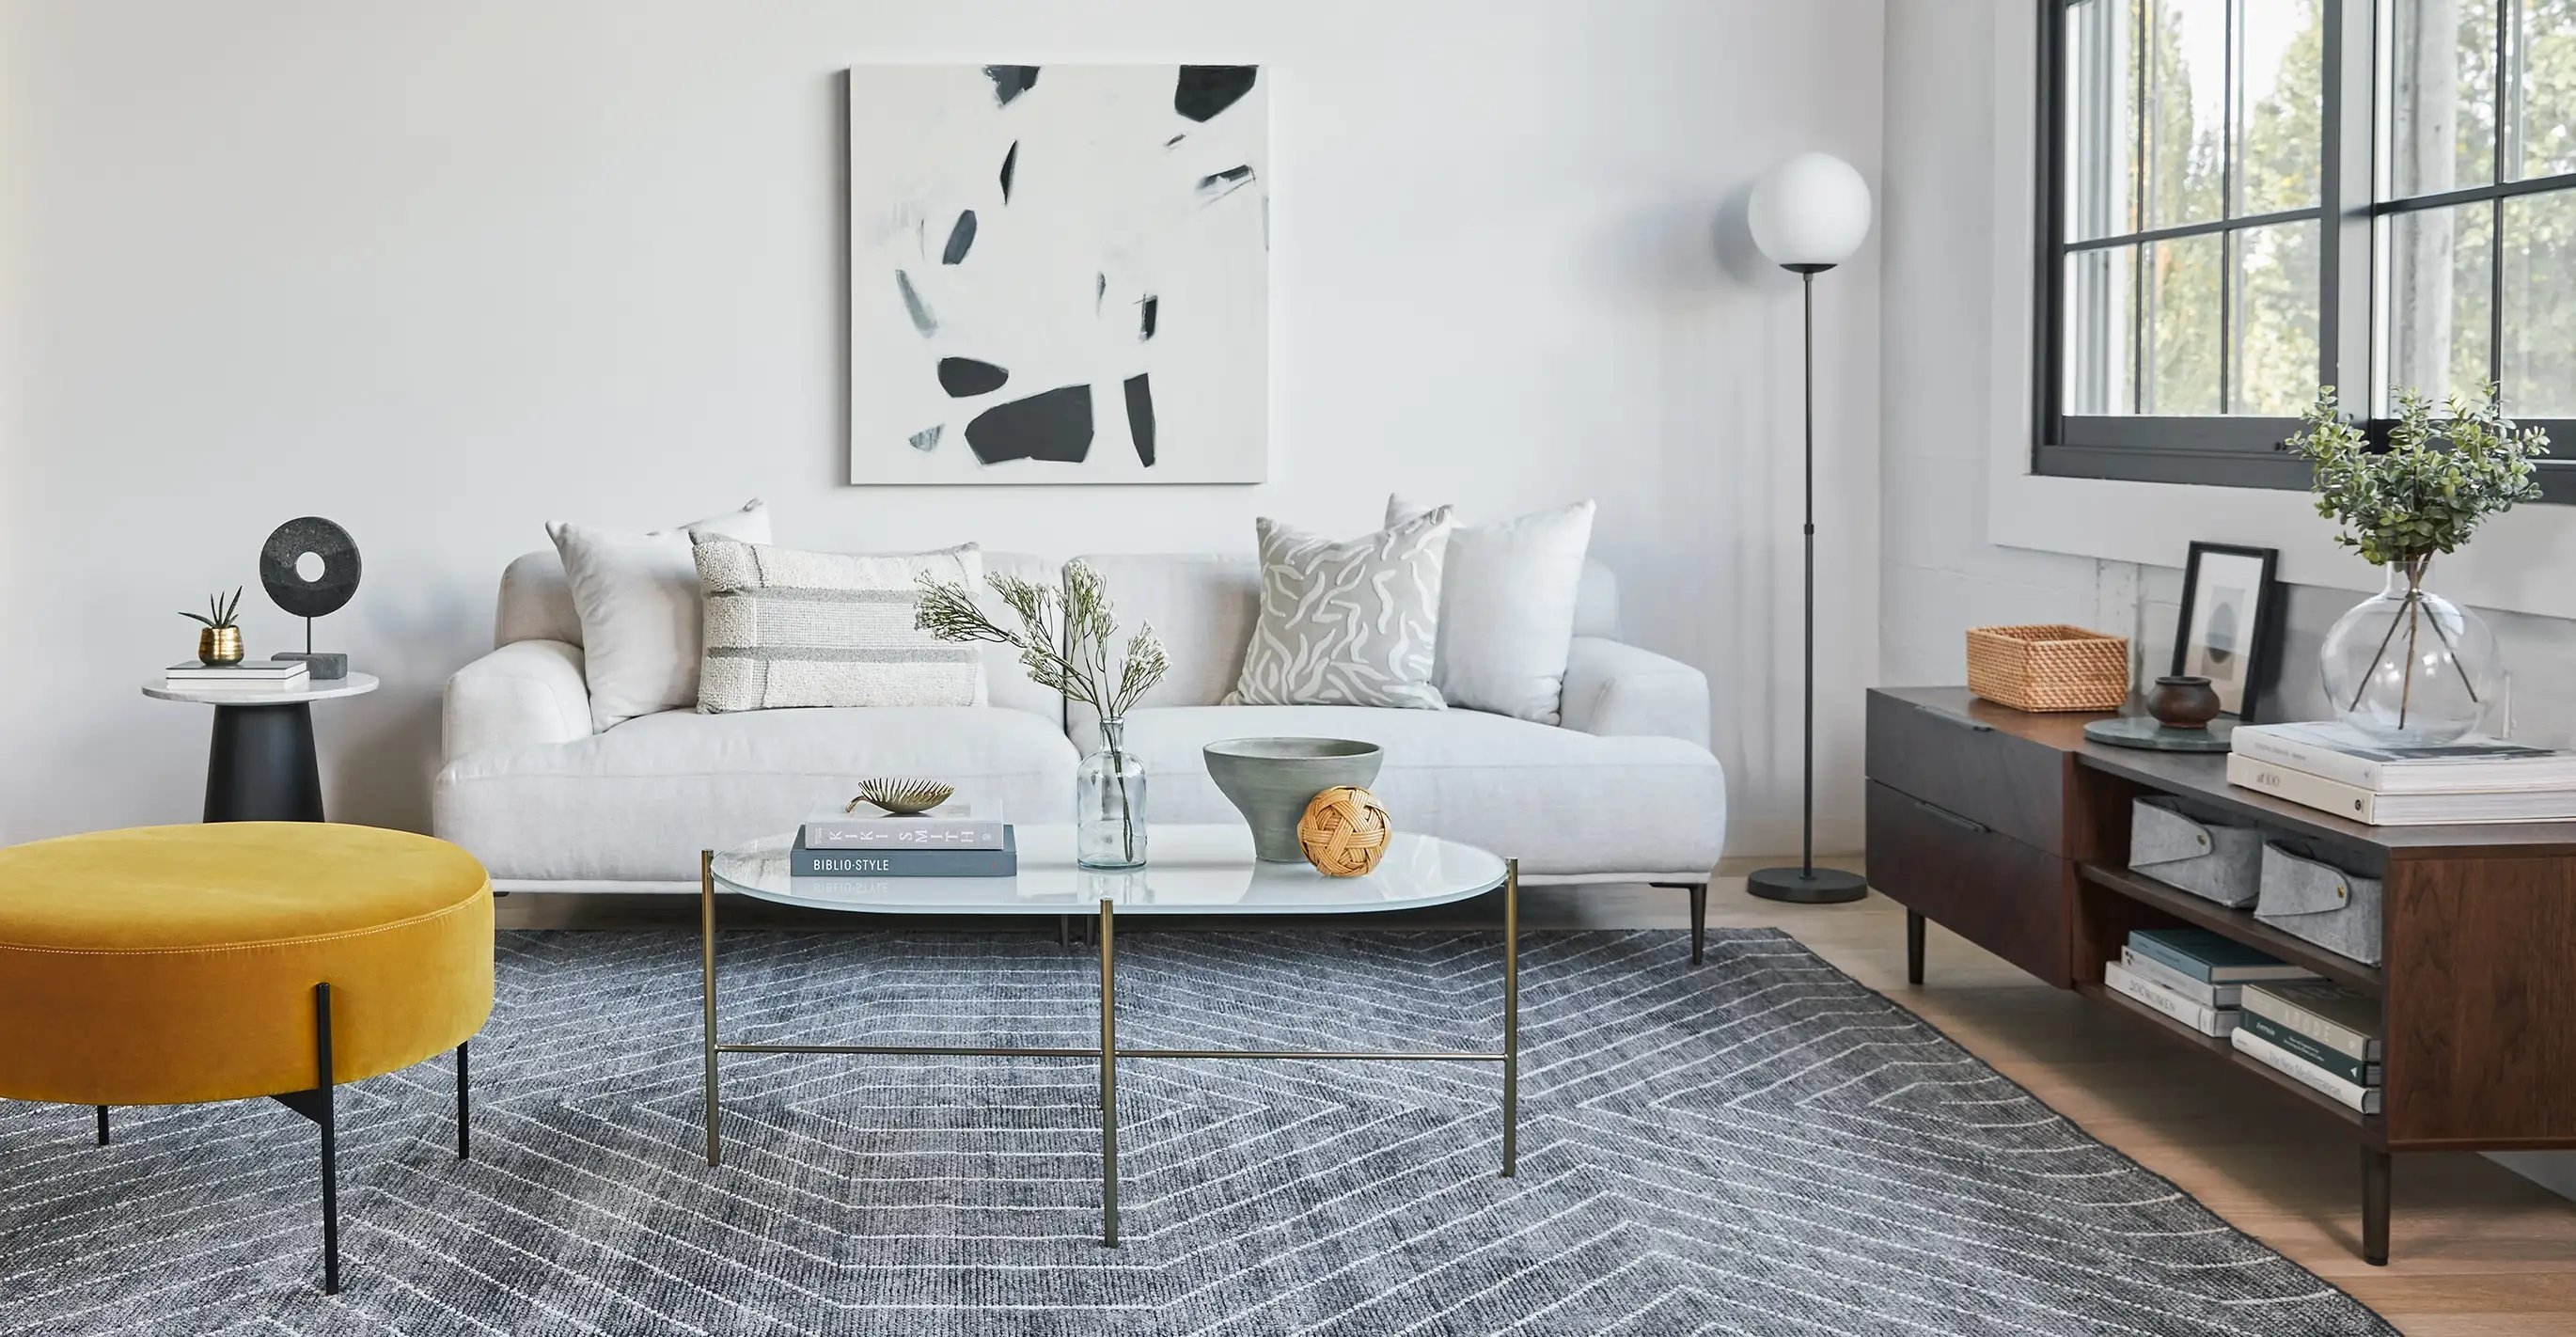 Abisko Quartz White Sofa - Image 2